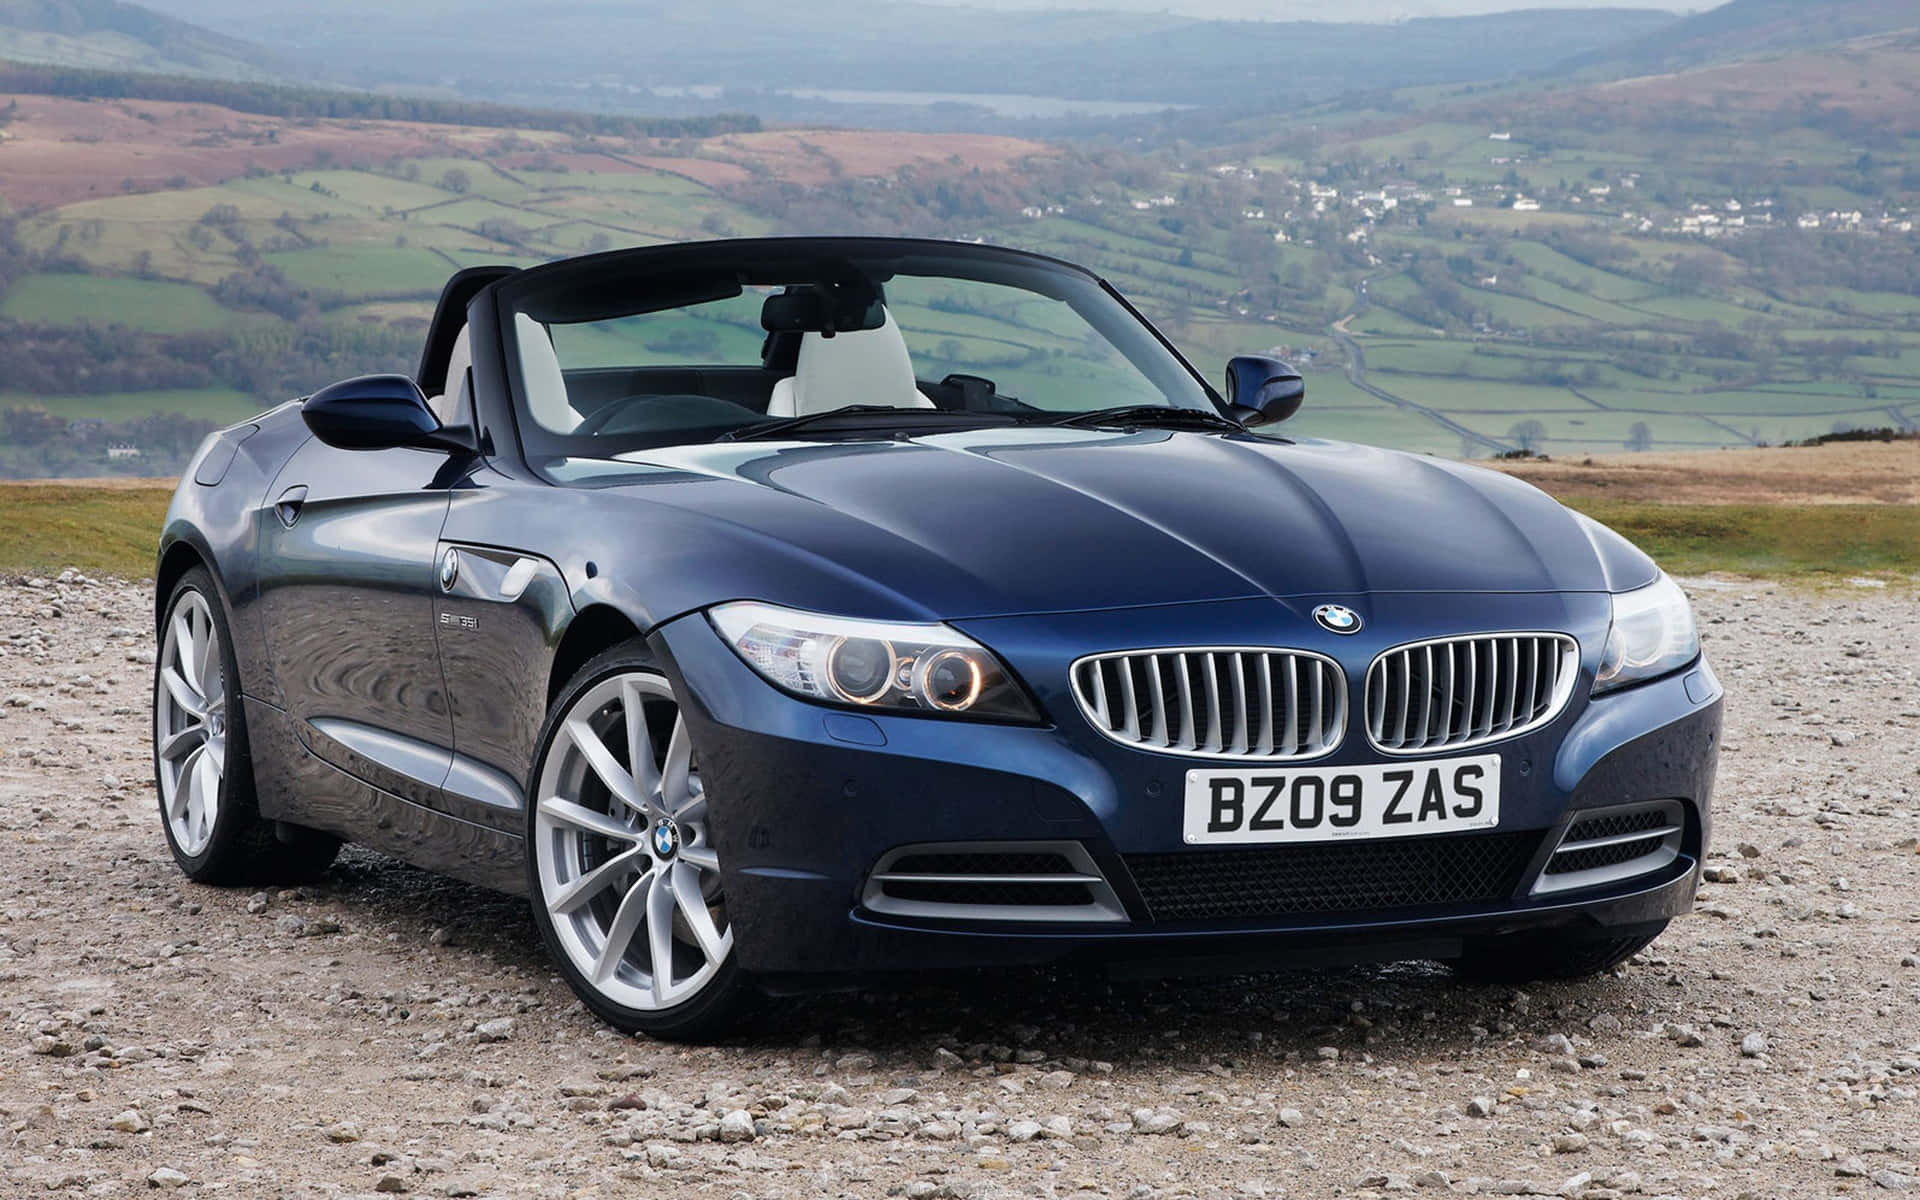 Tag en luksuriøs præstation for en spin i BMW X3. Wallpaper